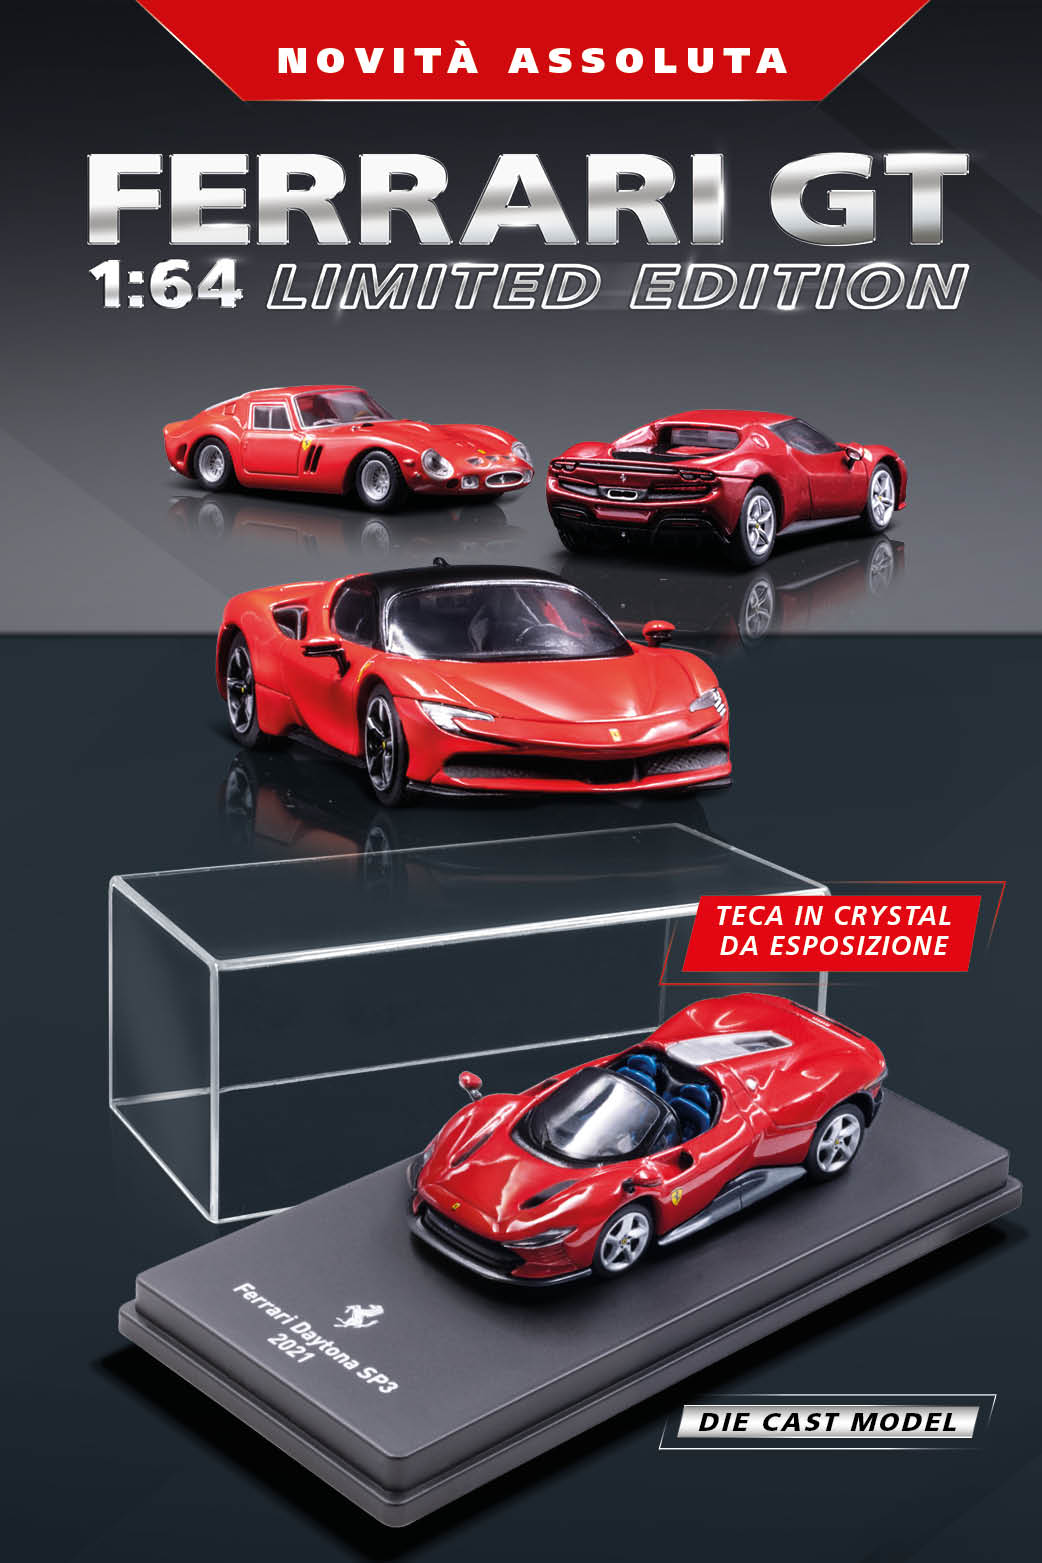 Ferrari Gran Turismo 1:64 gadget 054